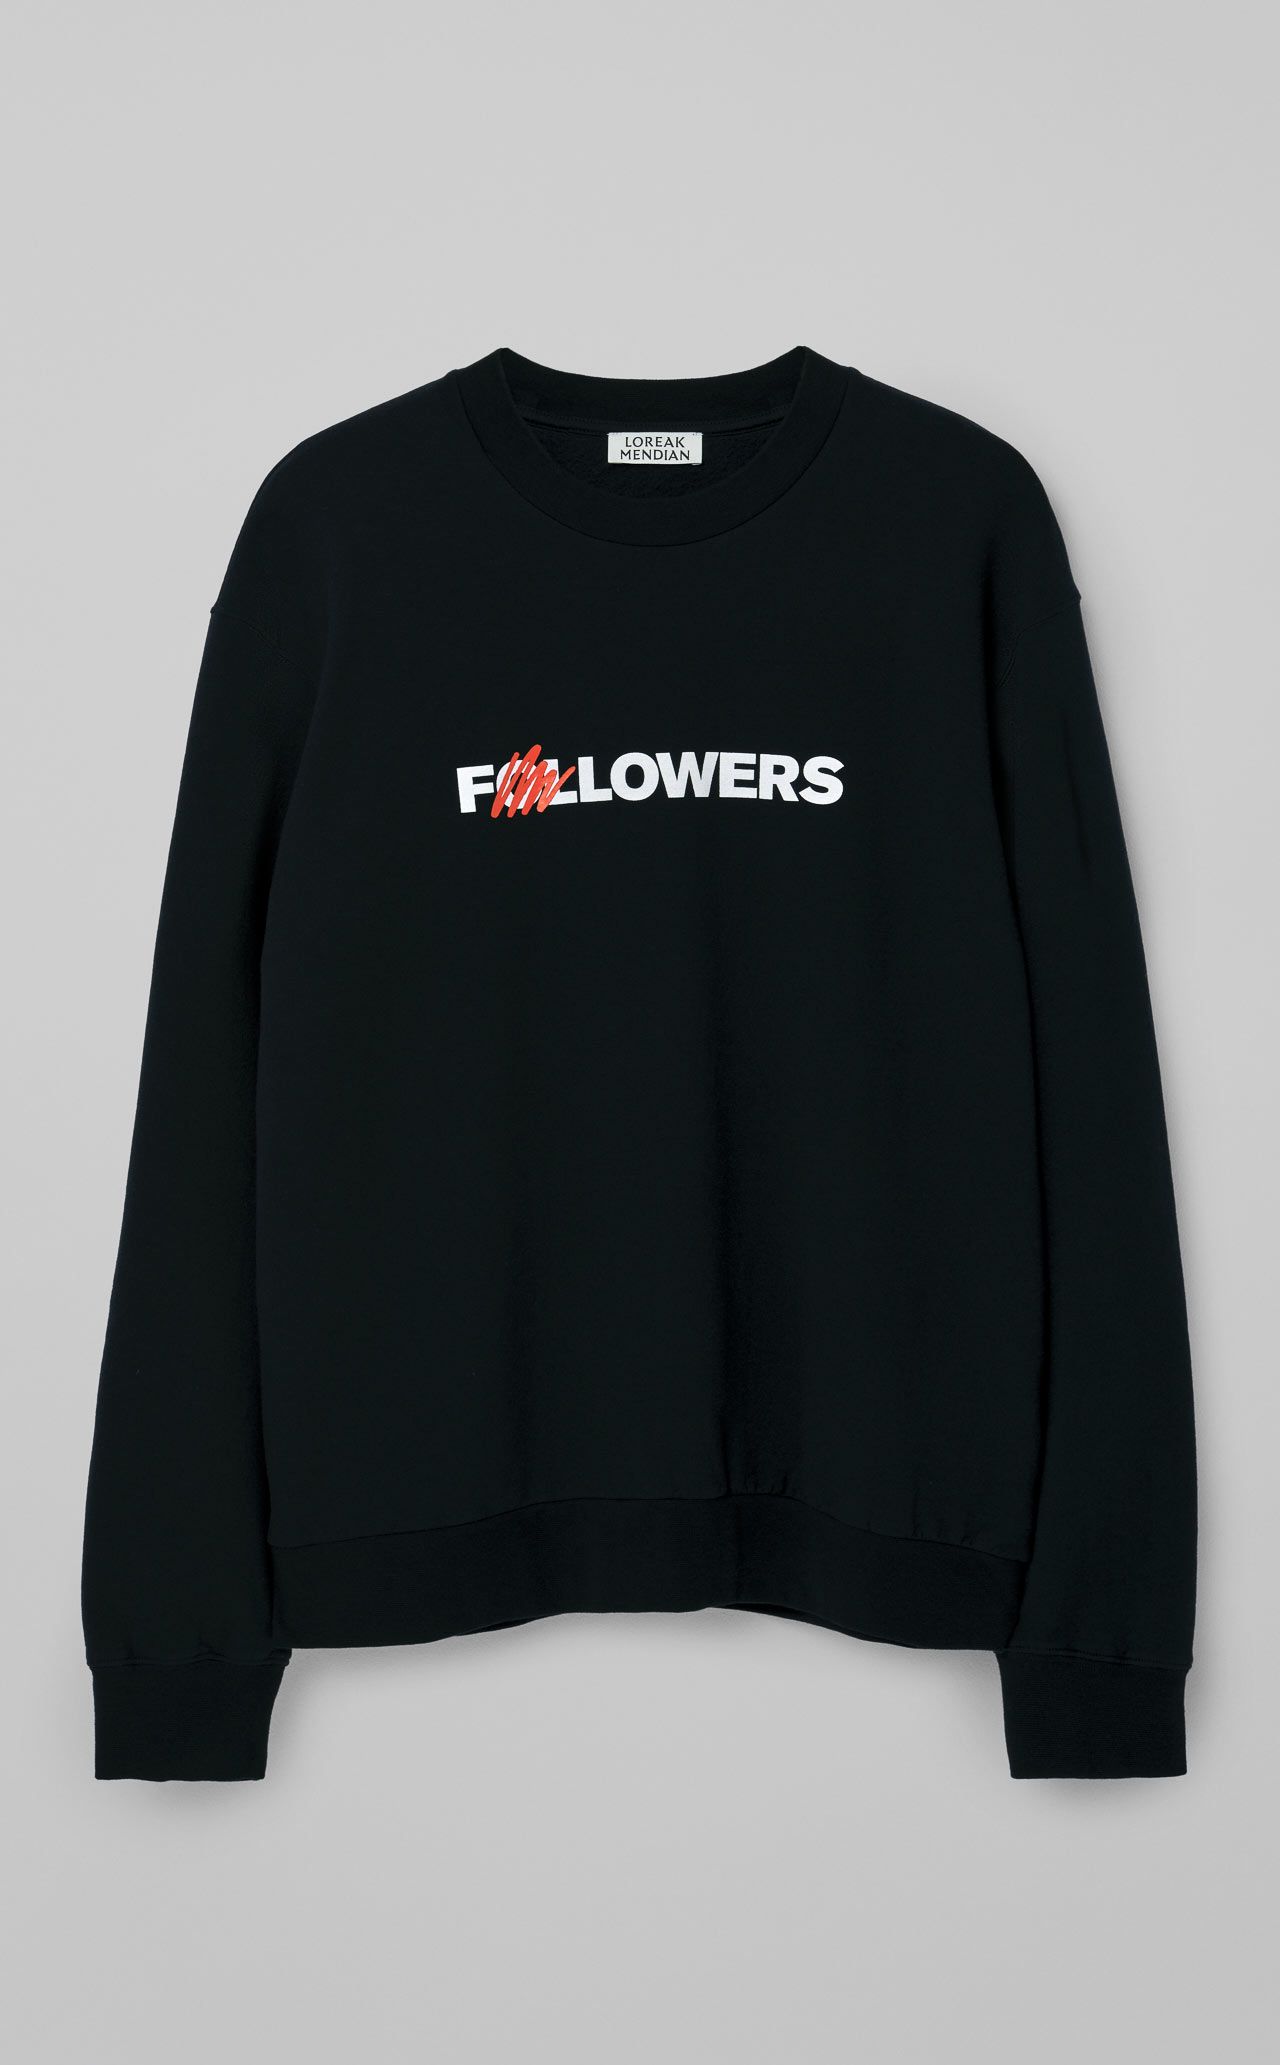 Followers  Sweatshirt